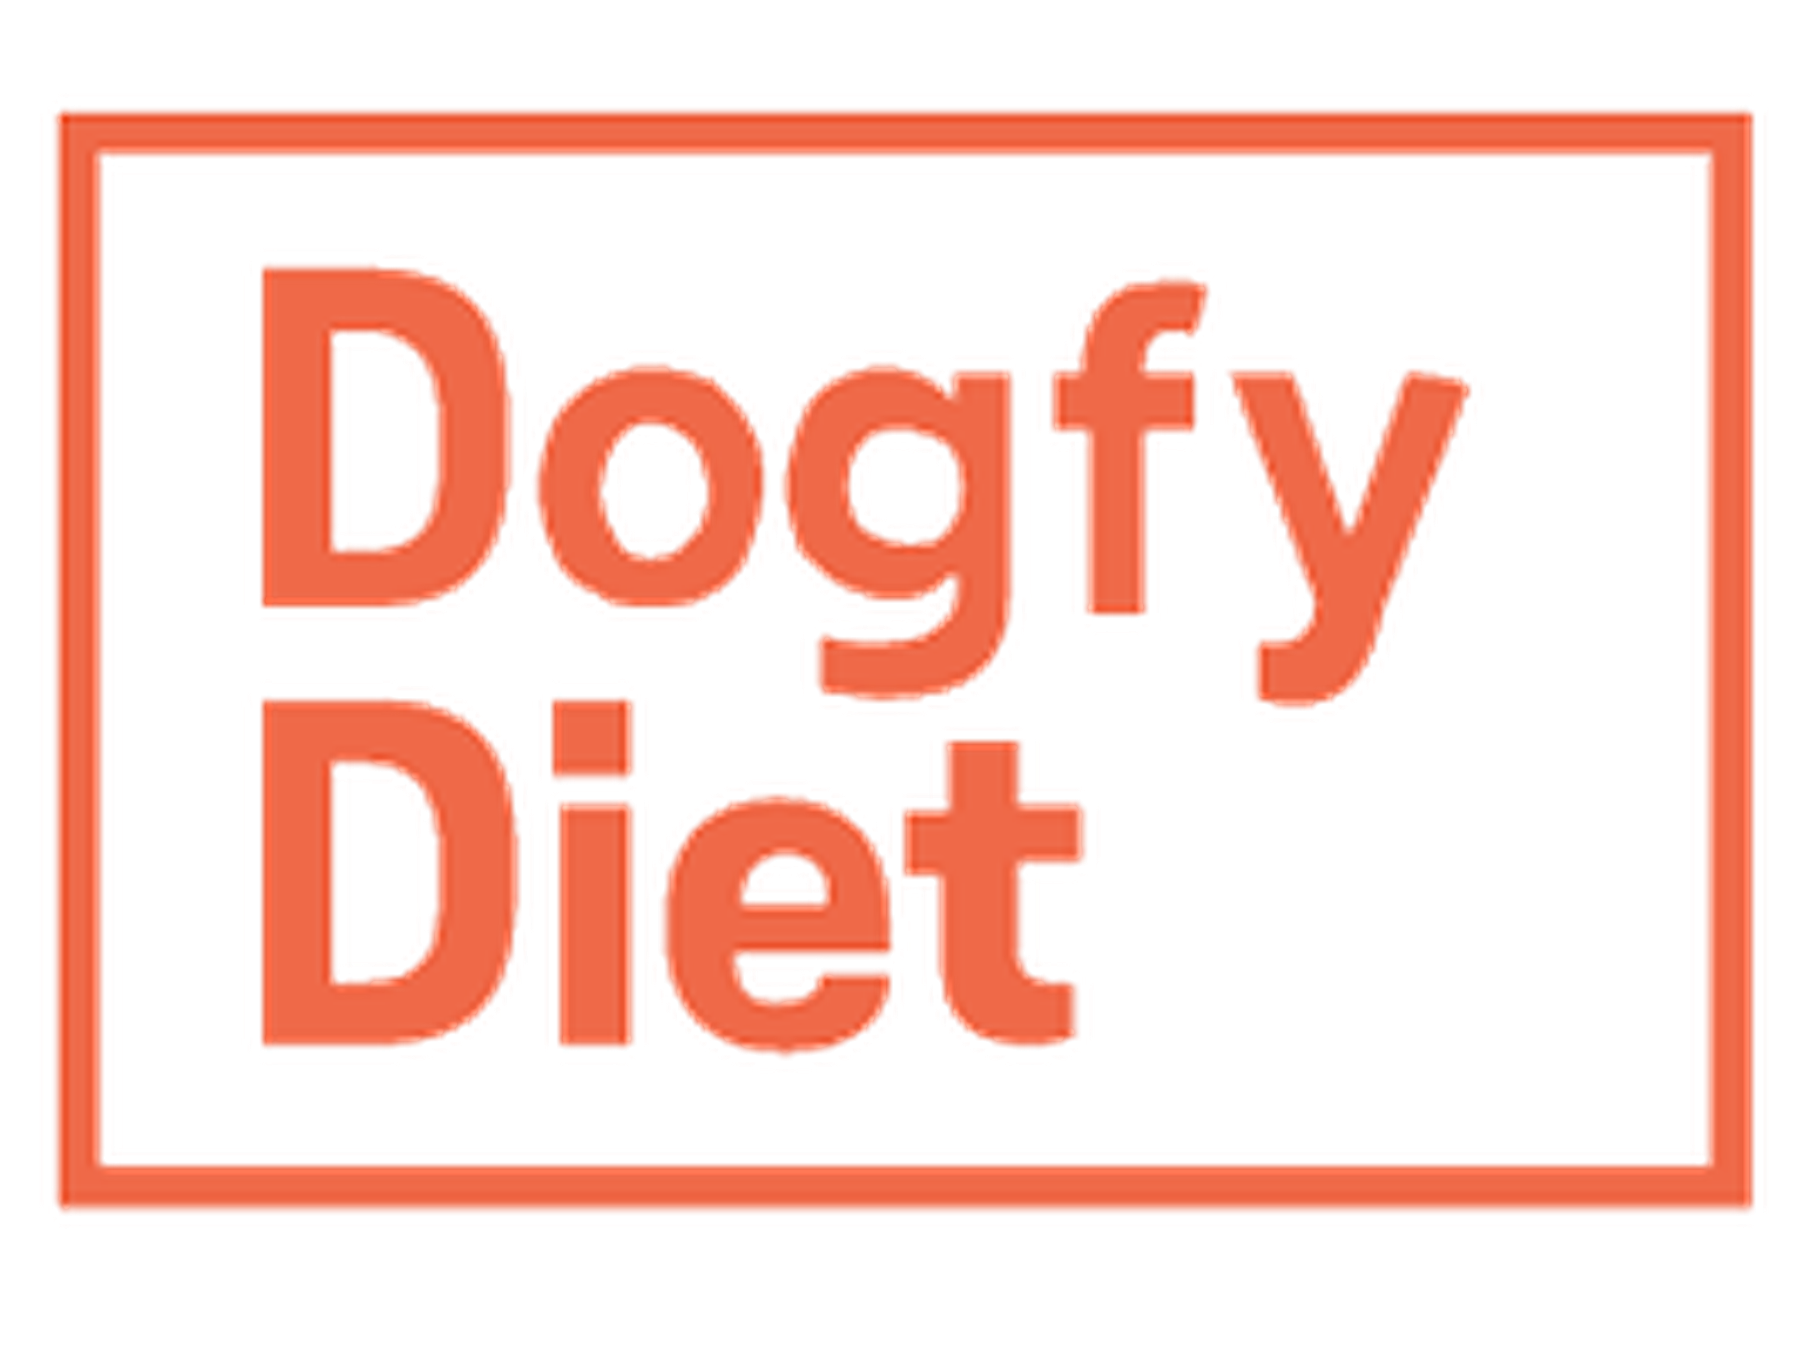 Código descuento Dogfy Diet